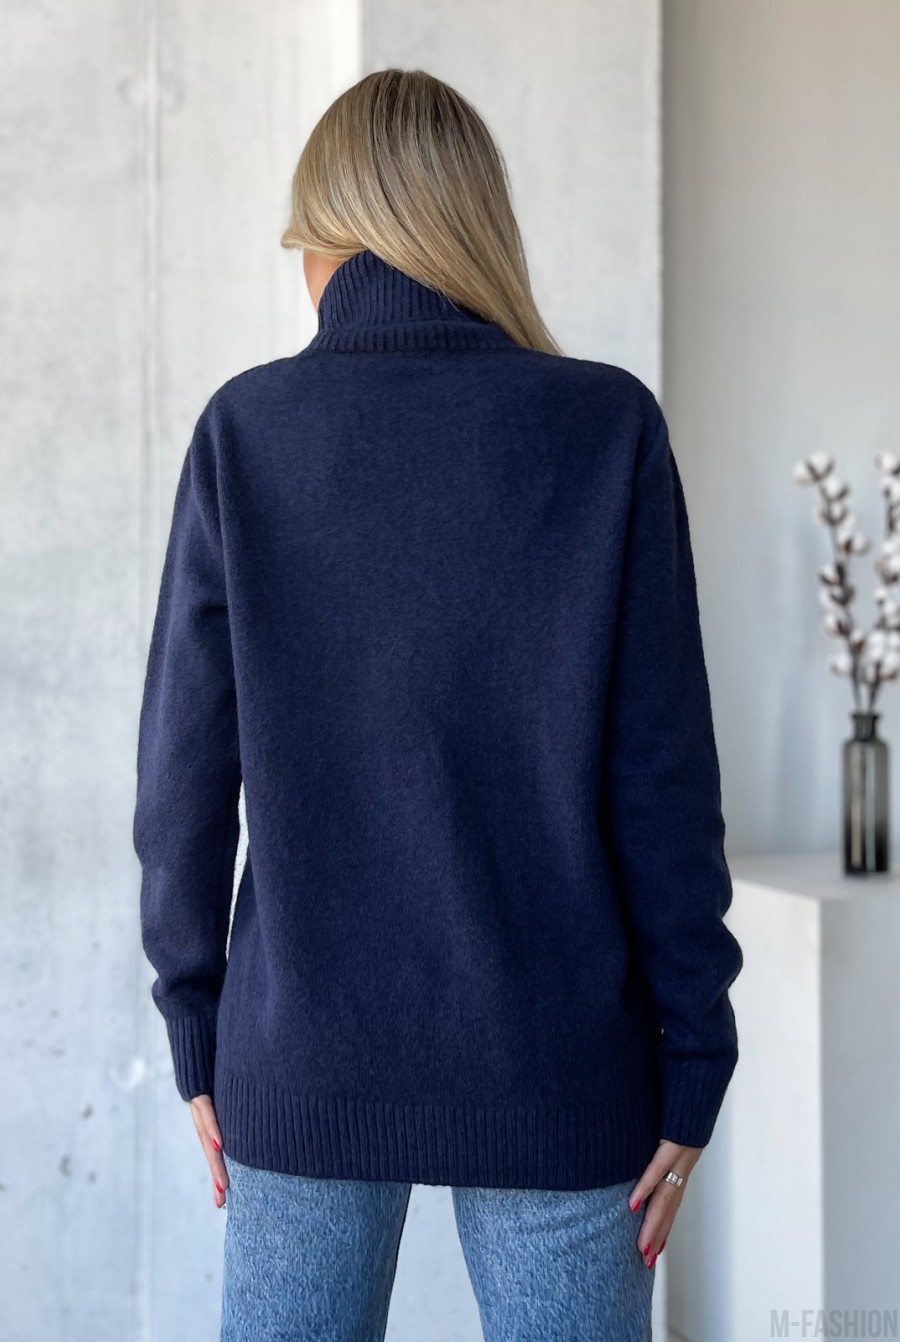 Темно-синий свитер объемной вязки с высоким горлом - Фото 3